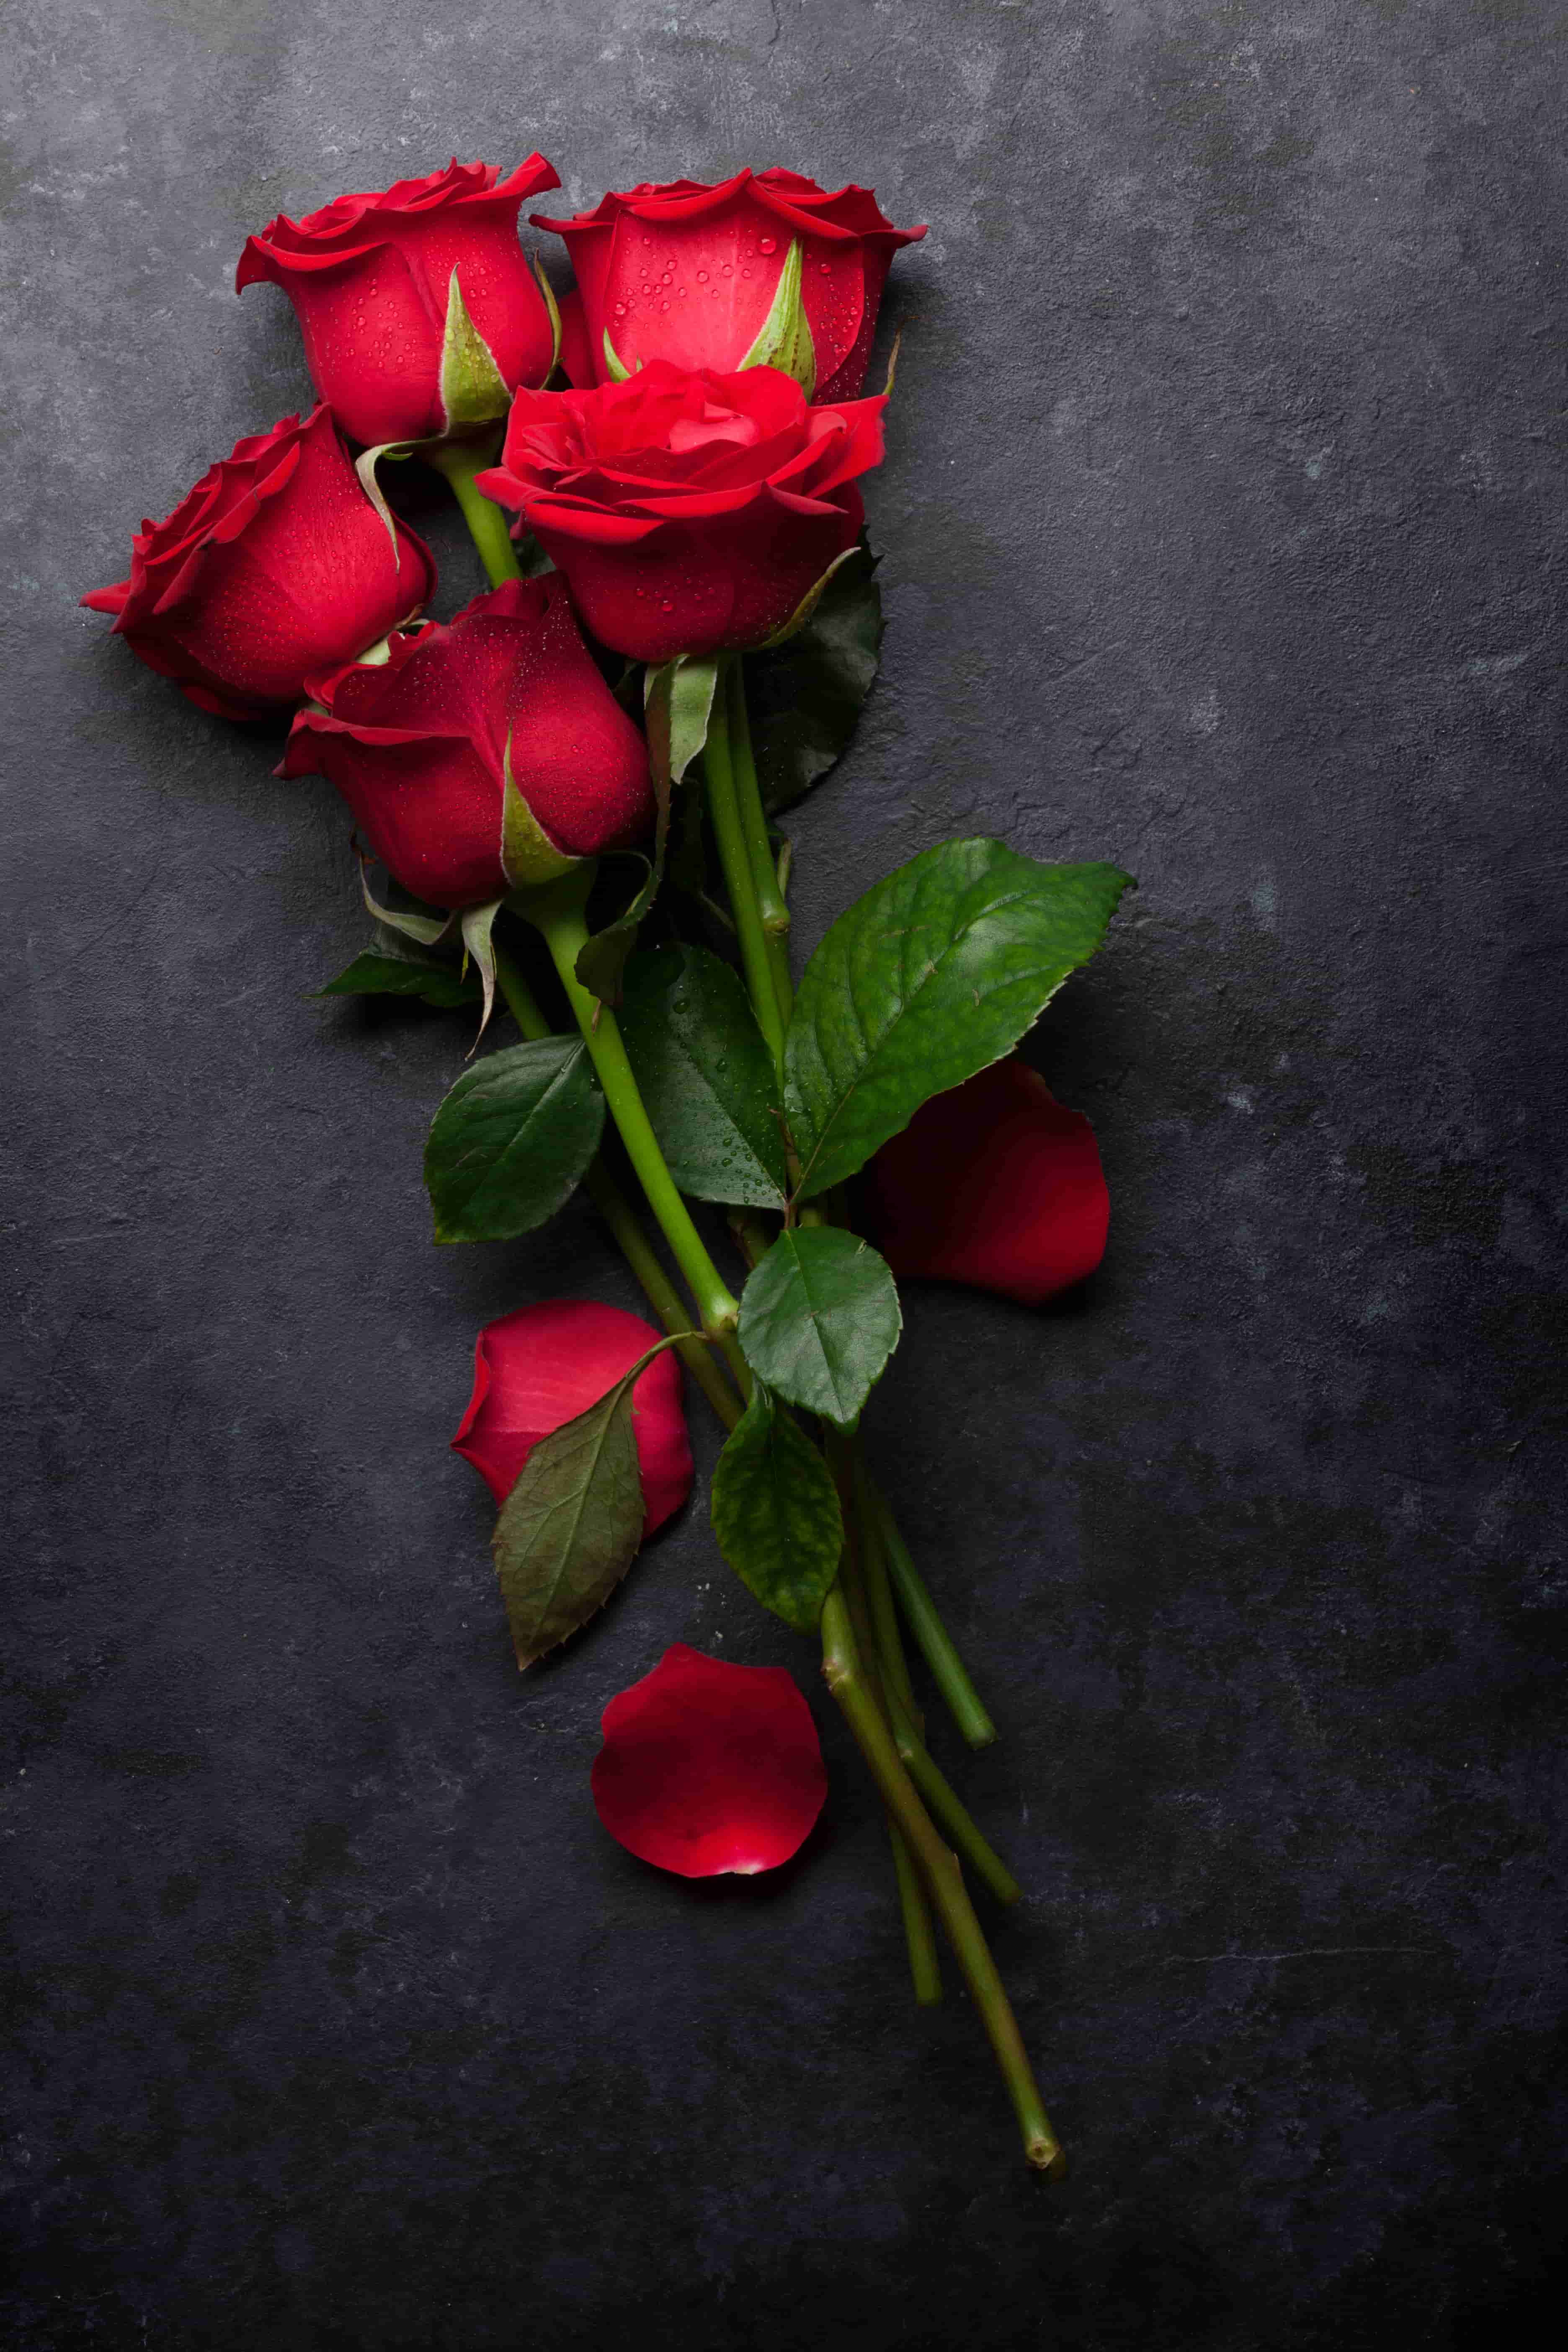 nice rose flower images